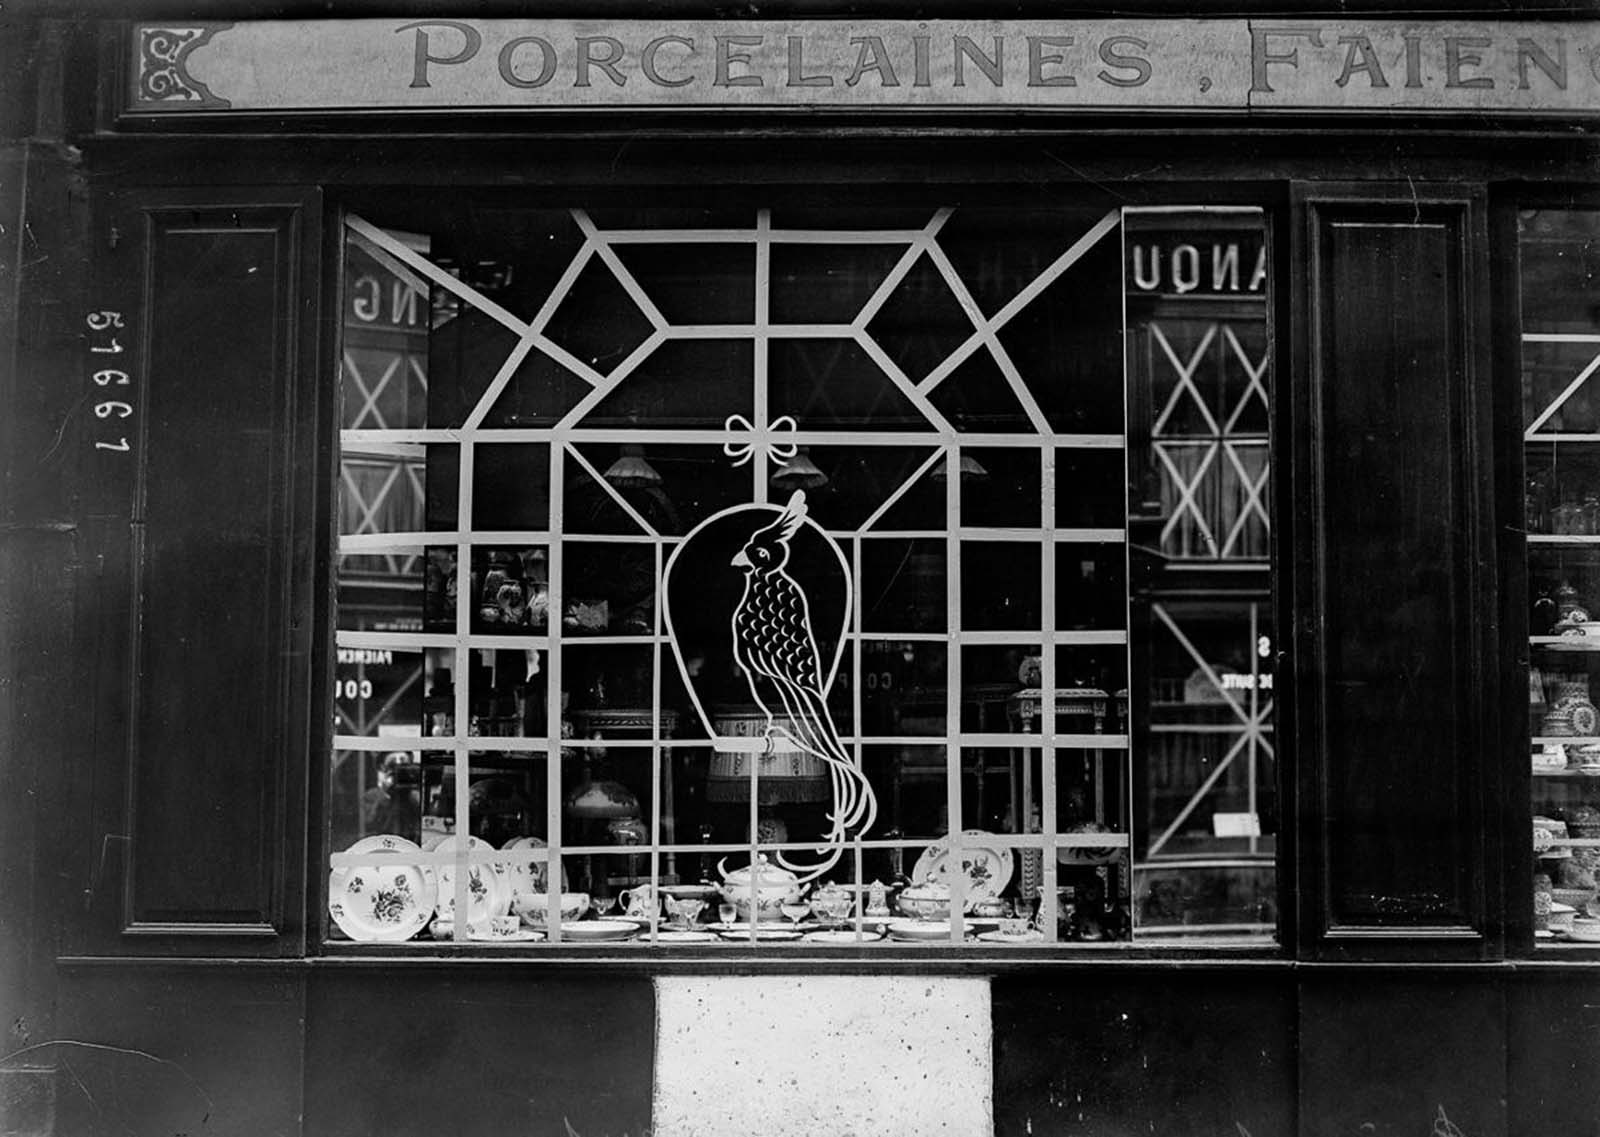 Quand Paris était protégé par des sacs de sable et du ruban adhésif, 1914-1918